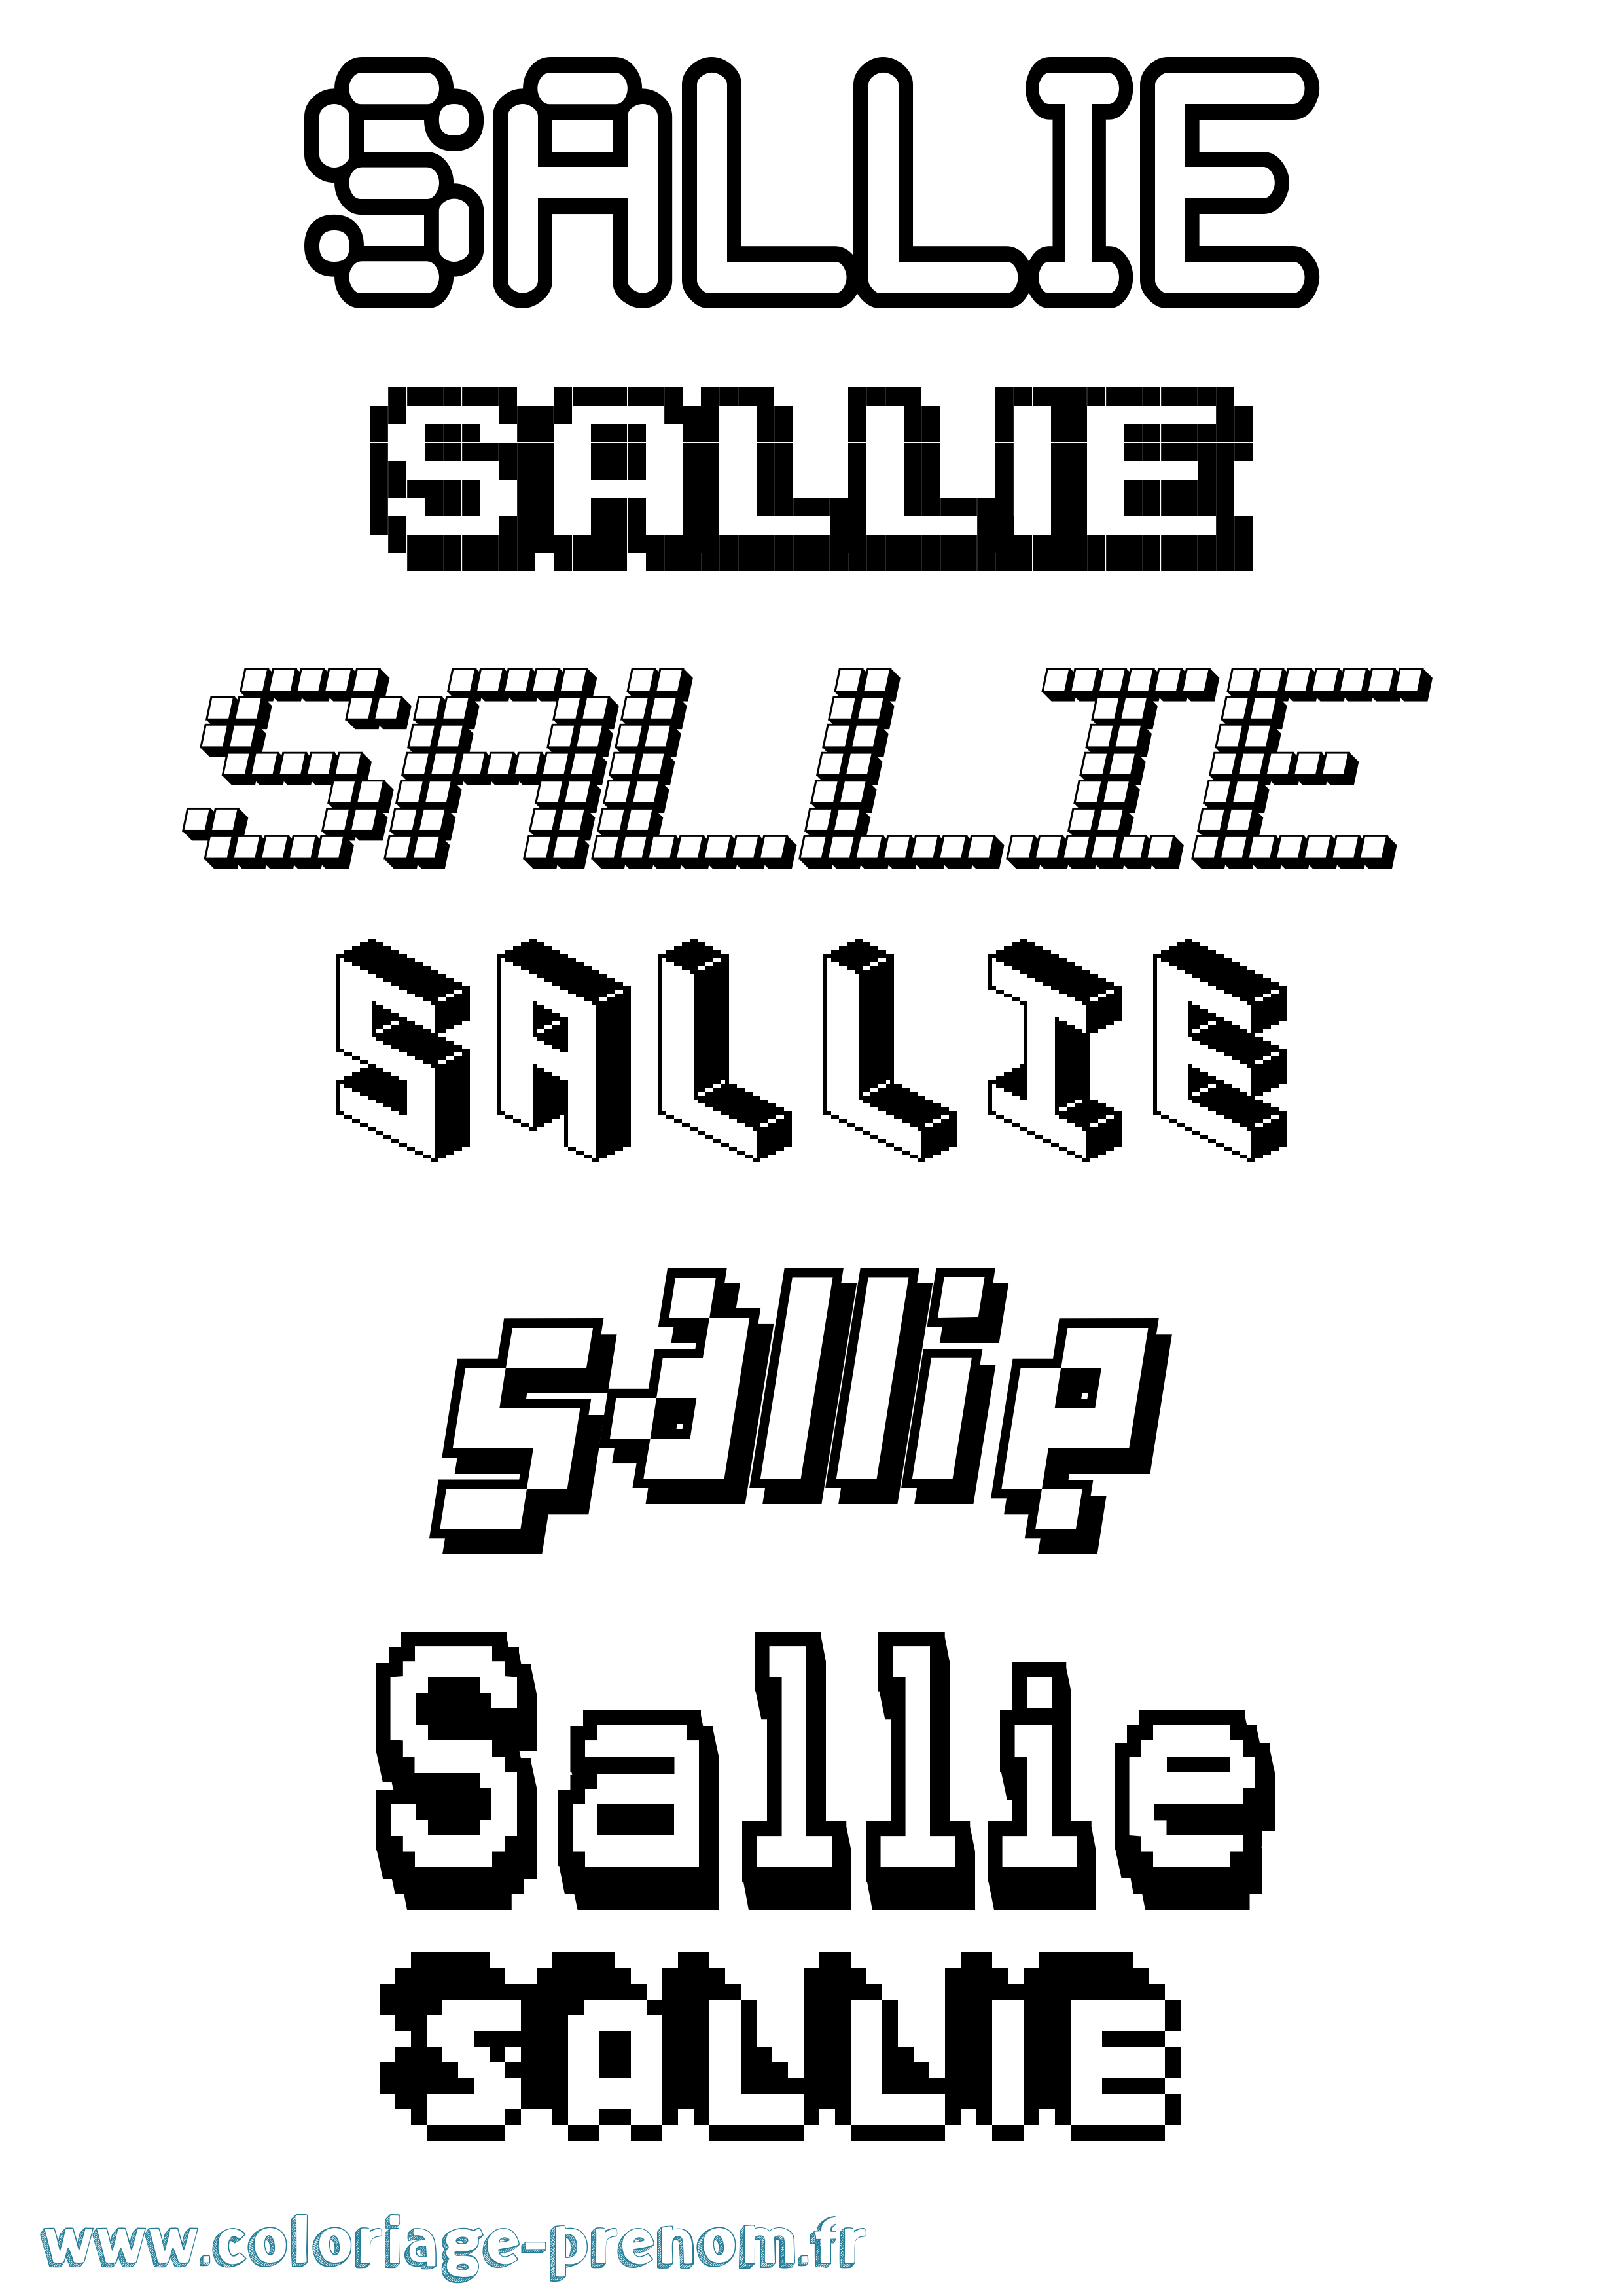 Coloriage prénom Sallie Pixel